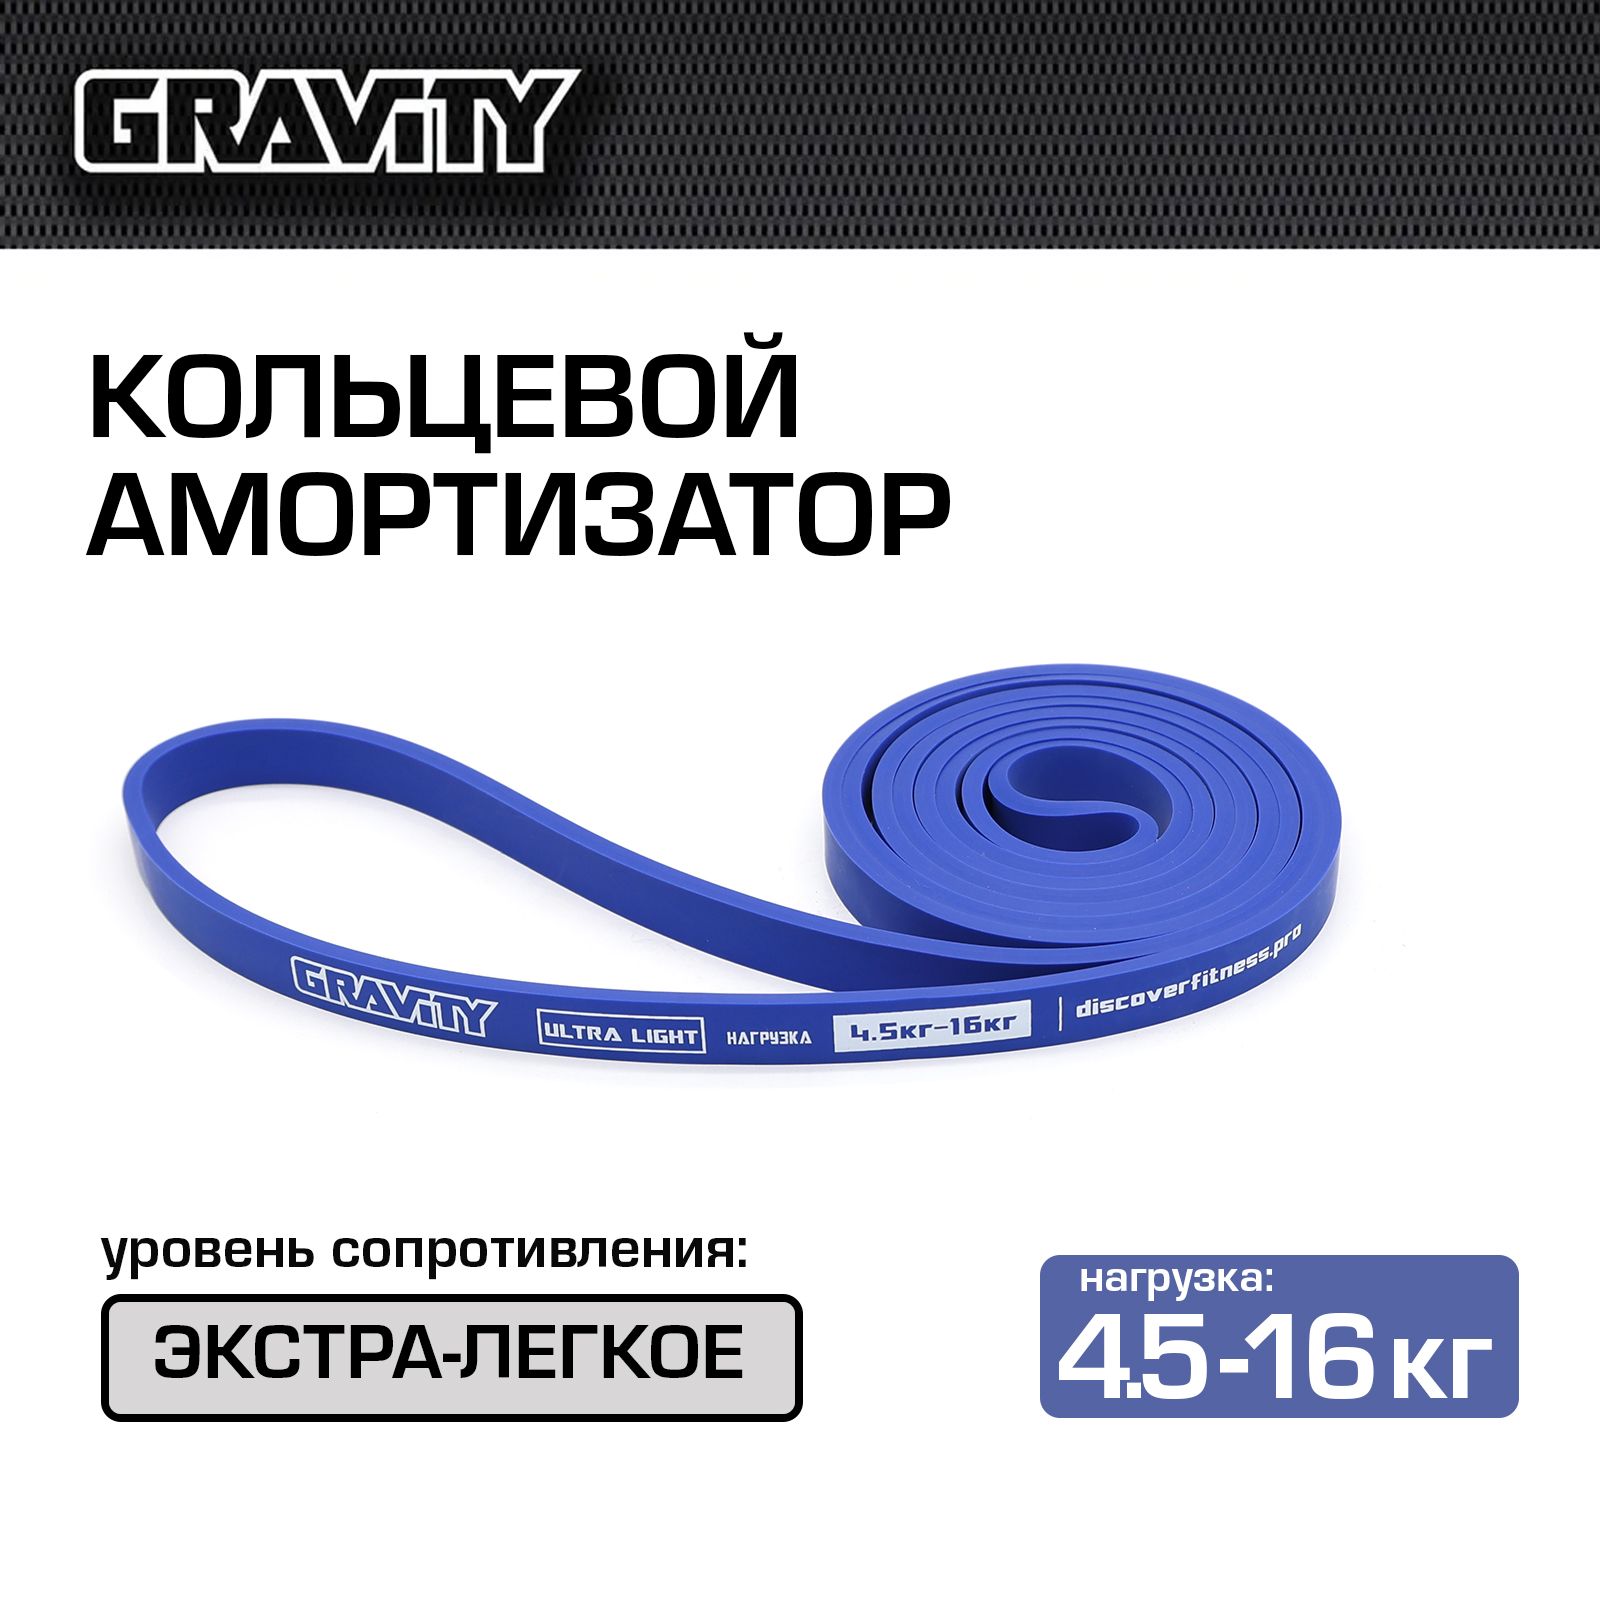 Кольцевой амортизатор Gravity, синий